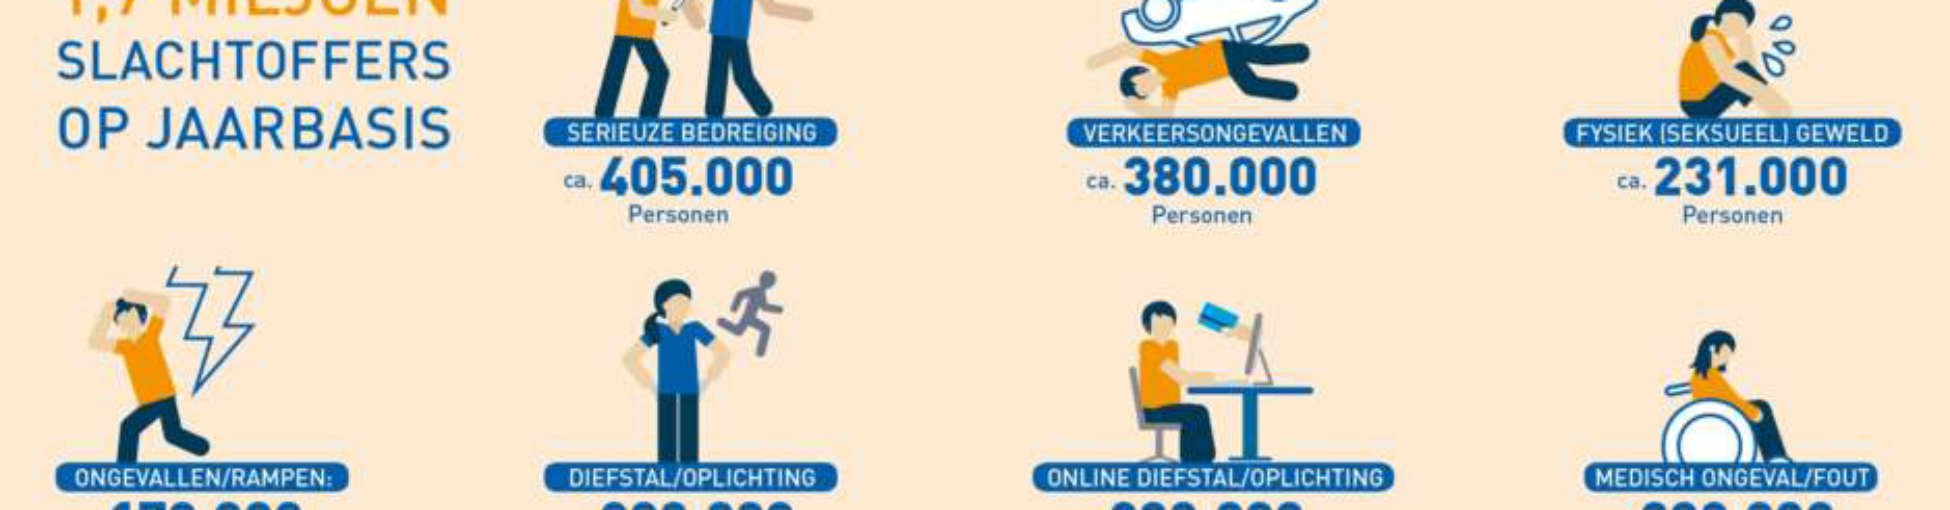 Infographic aantal slachtoffers op jaarbasis in Nederland. Onderdeel van het Victims-project